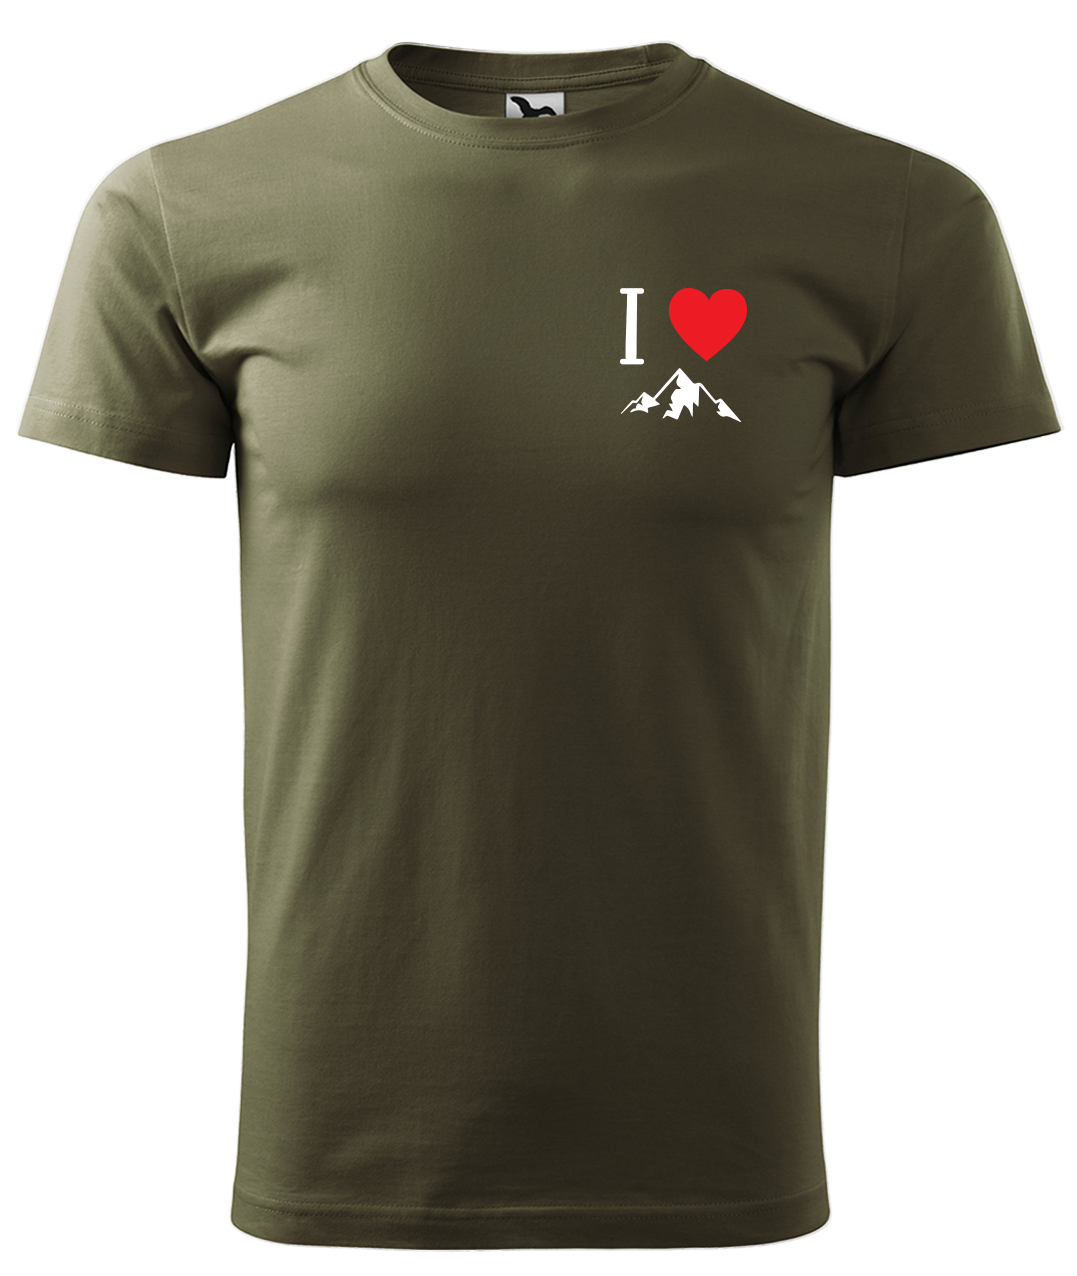 Dětské tričko na hory - I love mountain Velikost: 4 roky / 110 cm, Barva: Military (69), Délka rukávu: Krátký rukáv